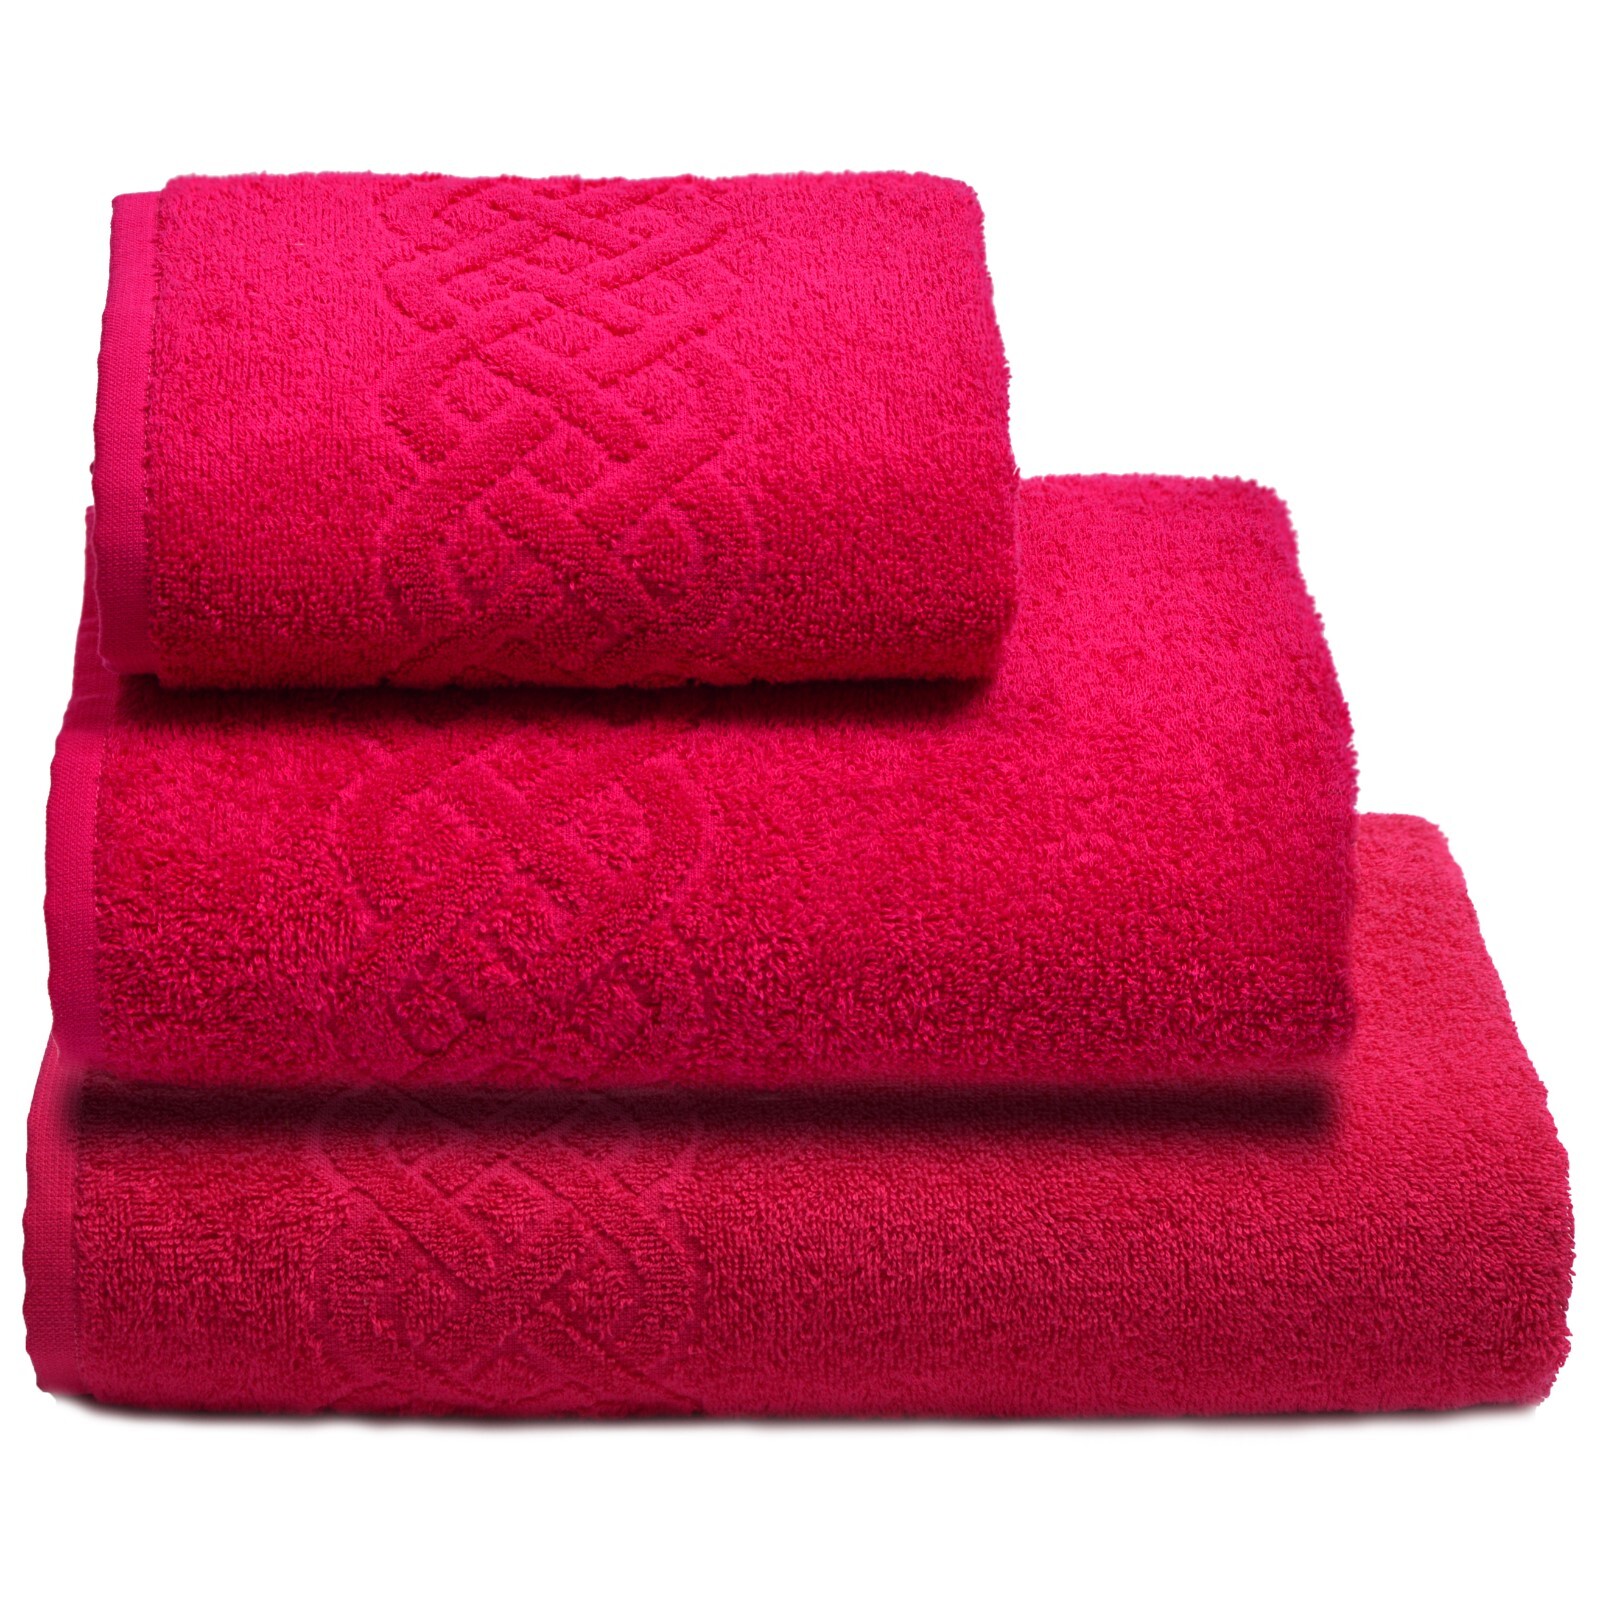 Купить махровые полотенца в интернет магазине. Полотенце махровое "дм-Люкс" plait, (57 зеленый). Полотенце пл-2701-01933. Полотенце махровое 70х140 Клинелли. Дм-Люкс полотенце plait.